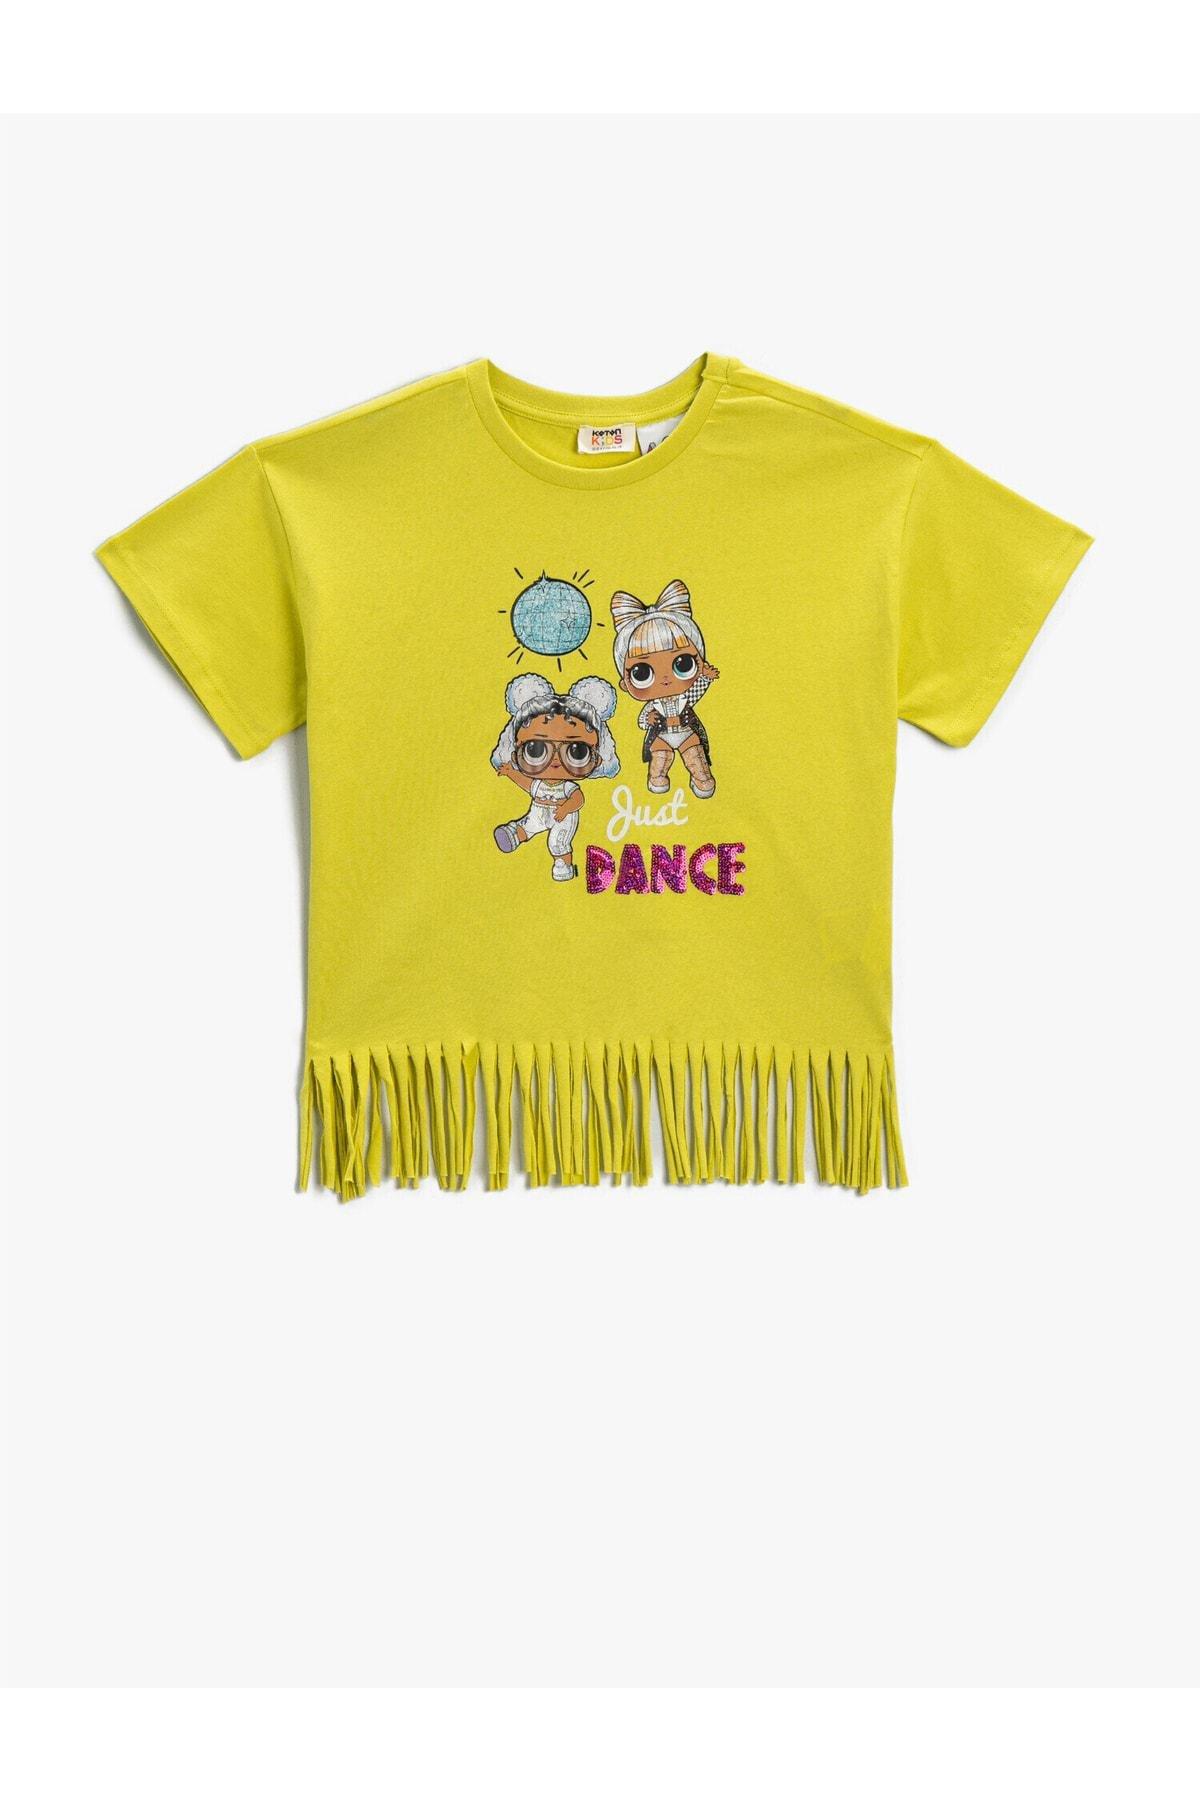 Koton - Yellow Crop T-Shirt, Kids Girls